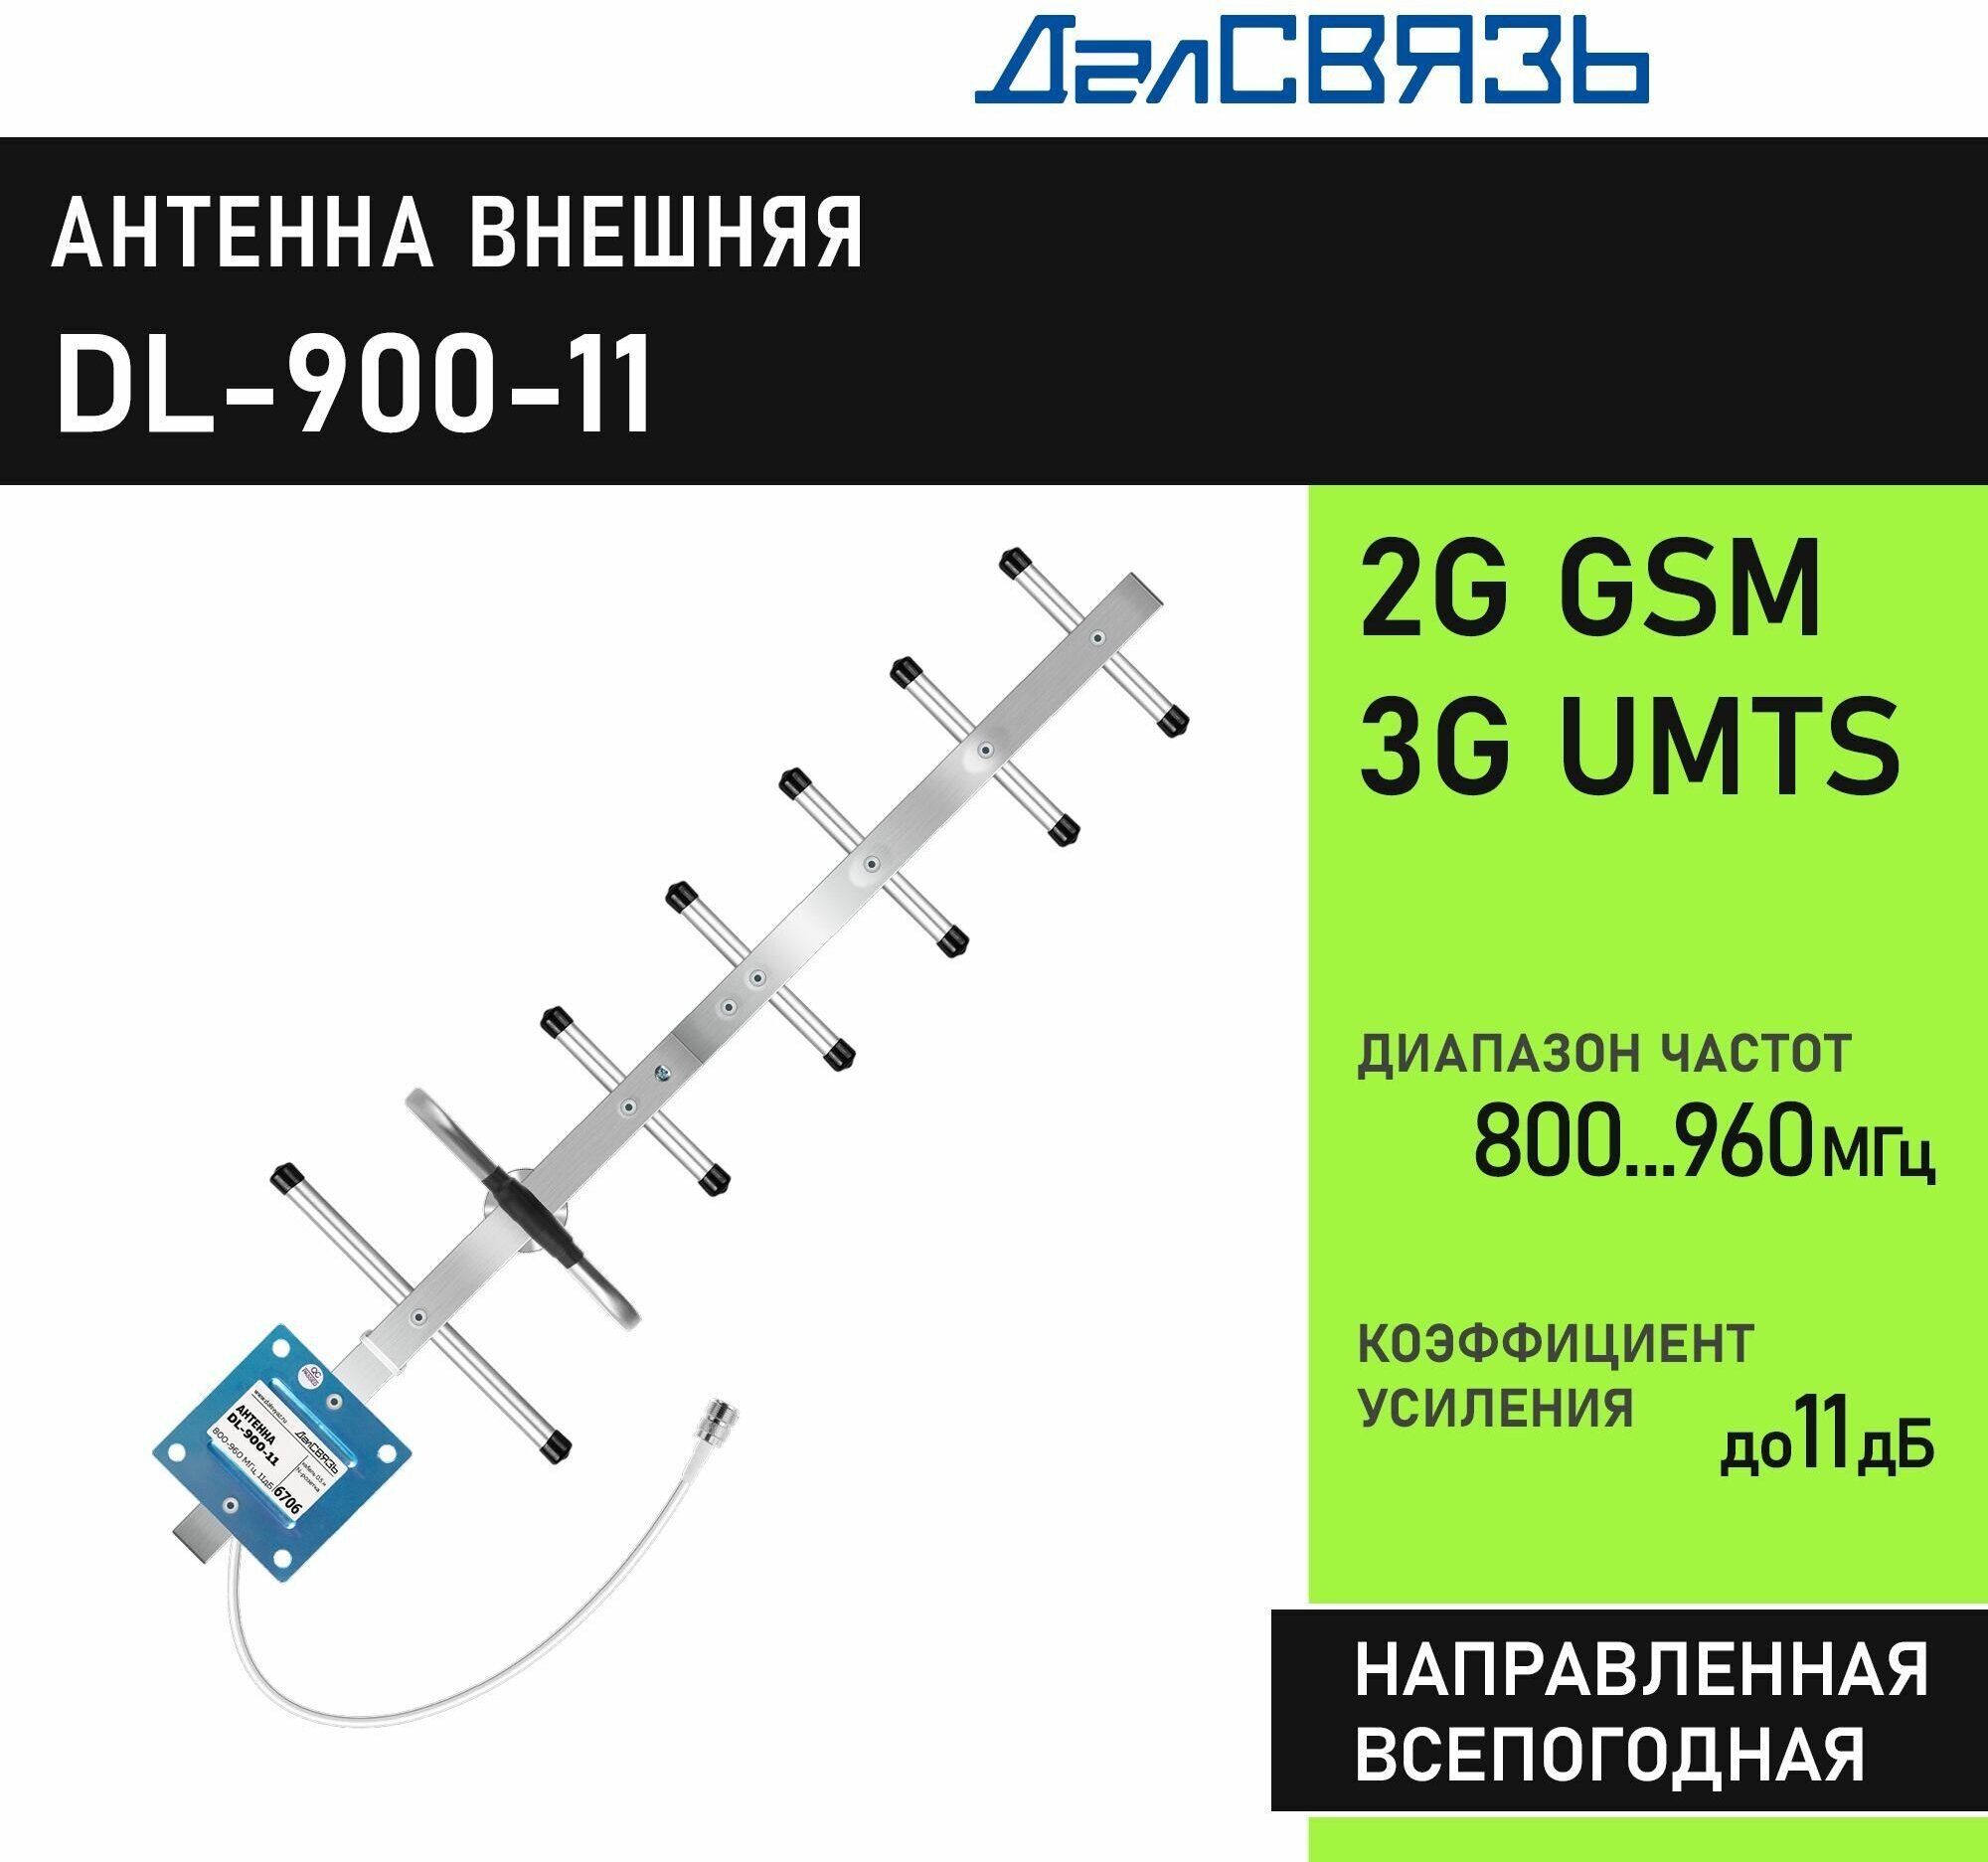 Антенна для усиления сотового сигнала ДалСвязь DL-900-11, направленная, всепогодная, узкополосная. 2G GSM900, 3G UMTS900